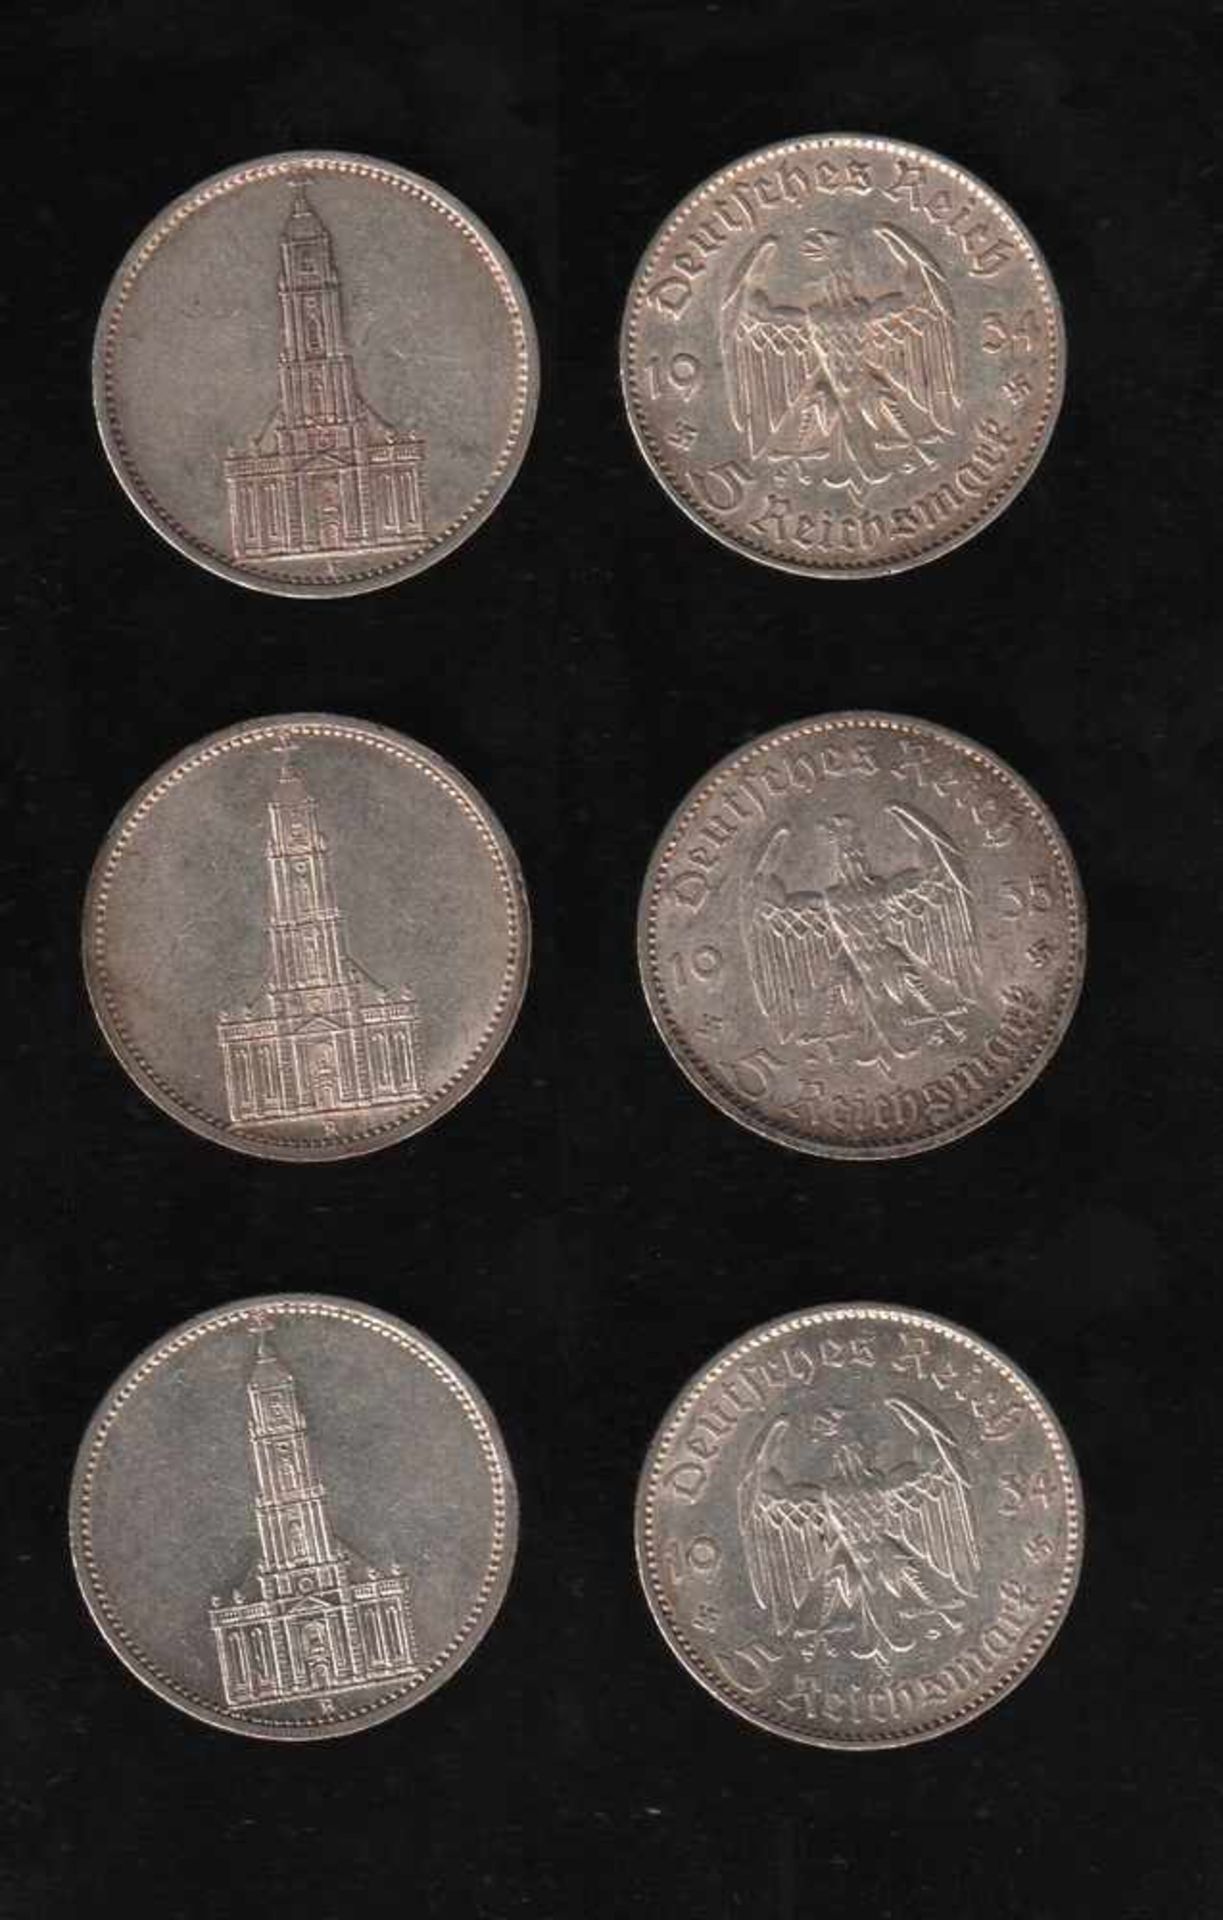 # Deutsches Reich. 32 Silbermünzen zu 5 Reichsmark und 2 Silbermünzen zu 2 Reichsmark. Erster